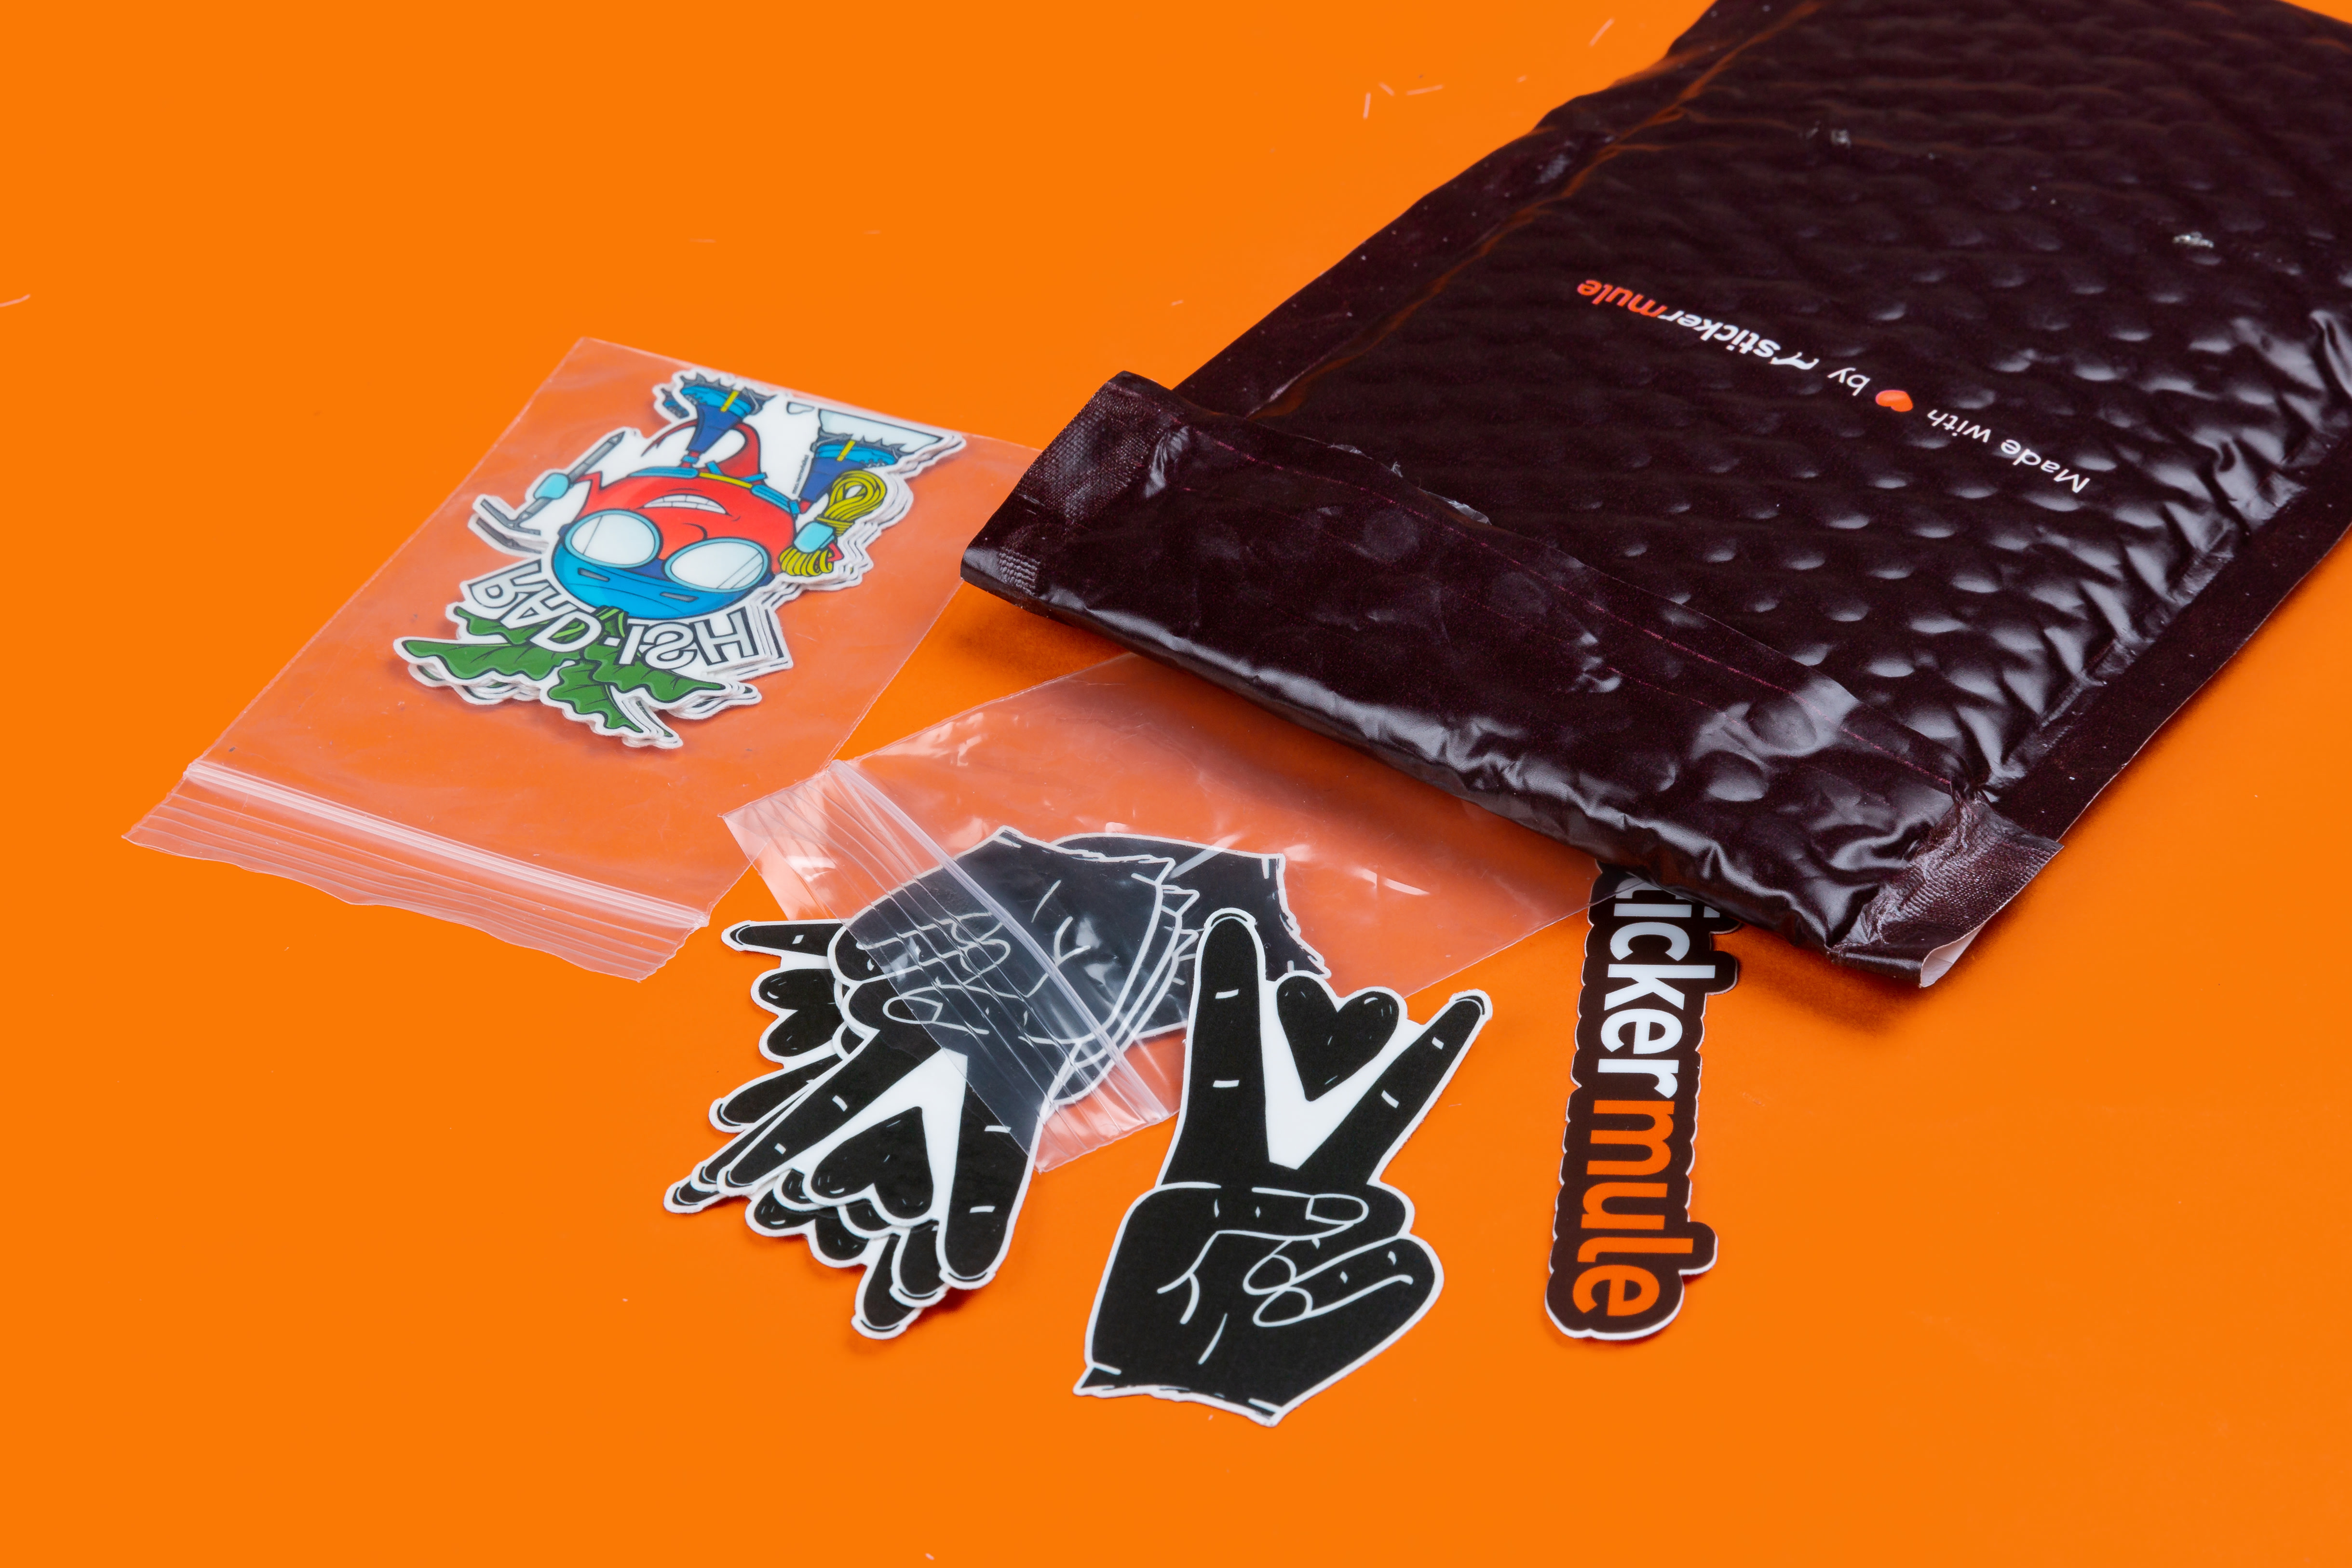 tatuagens temporárias personalizadas dentro de sacos plásticos com fecho ziplock sobre fundo laranja